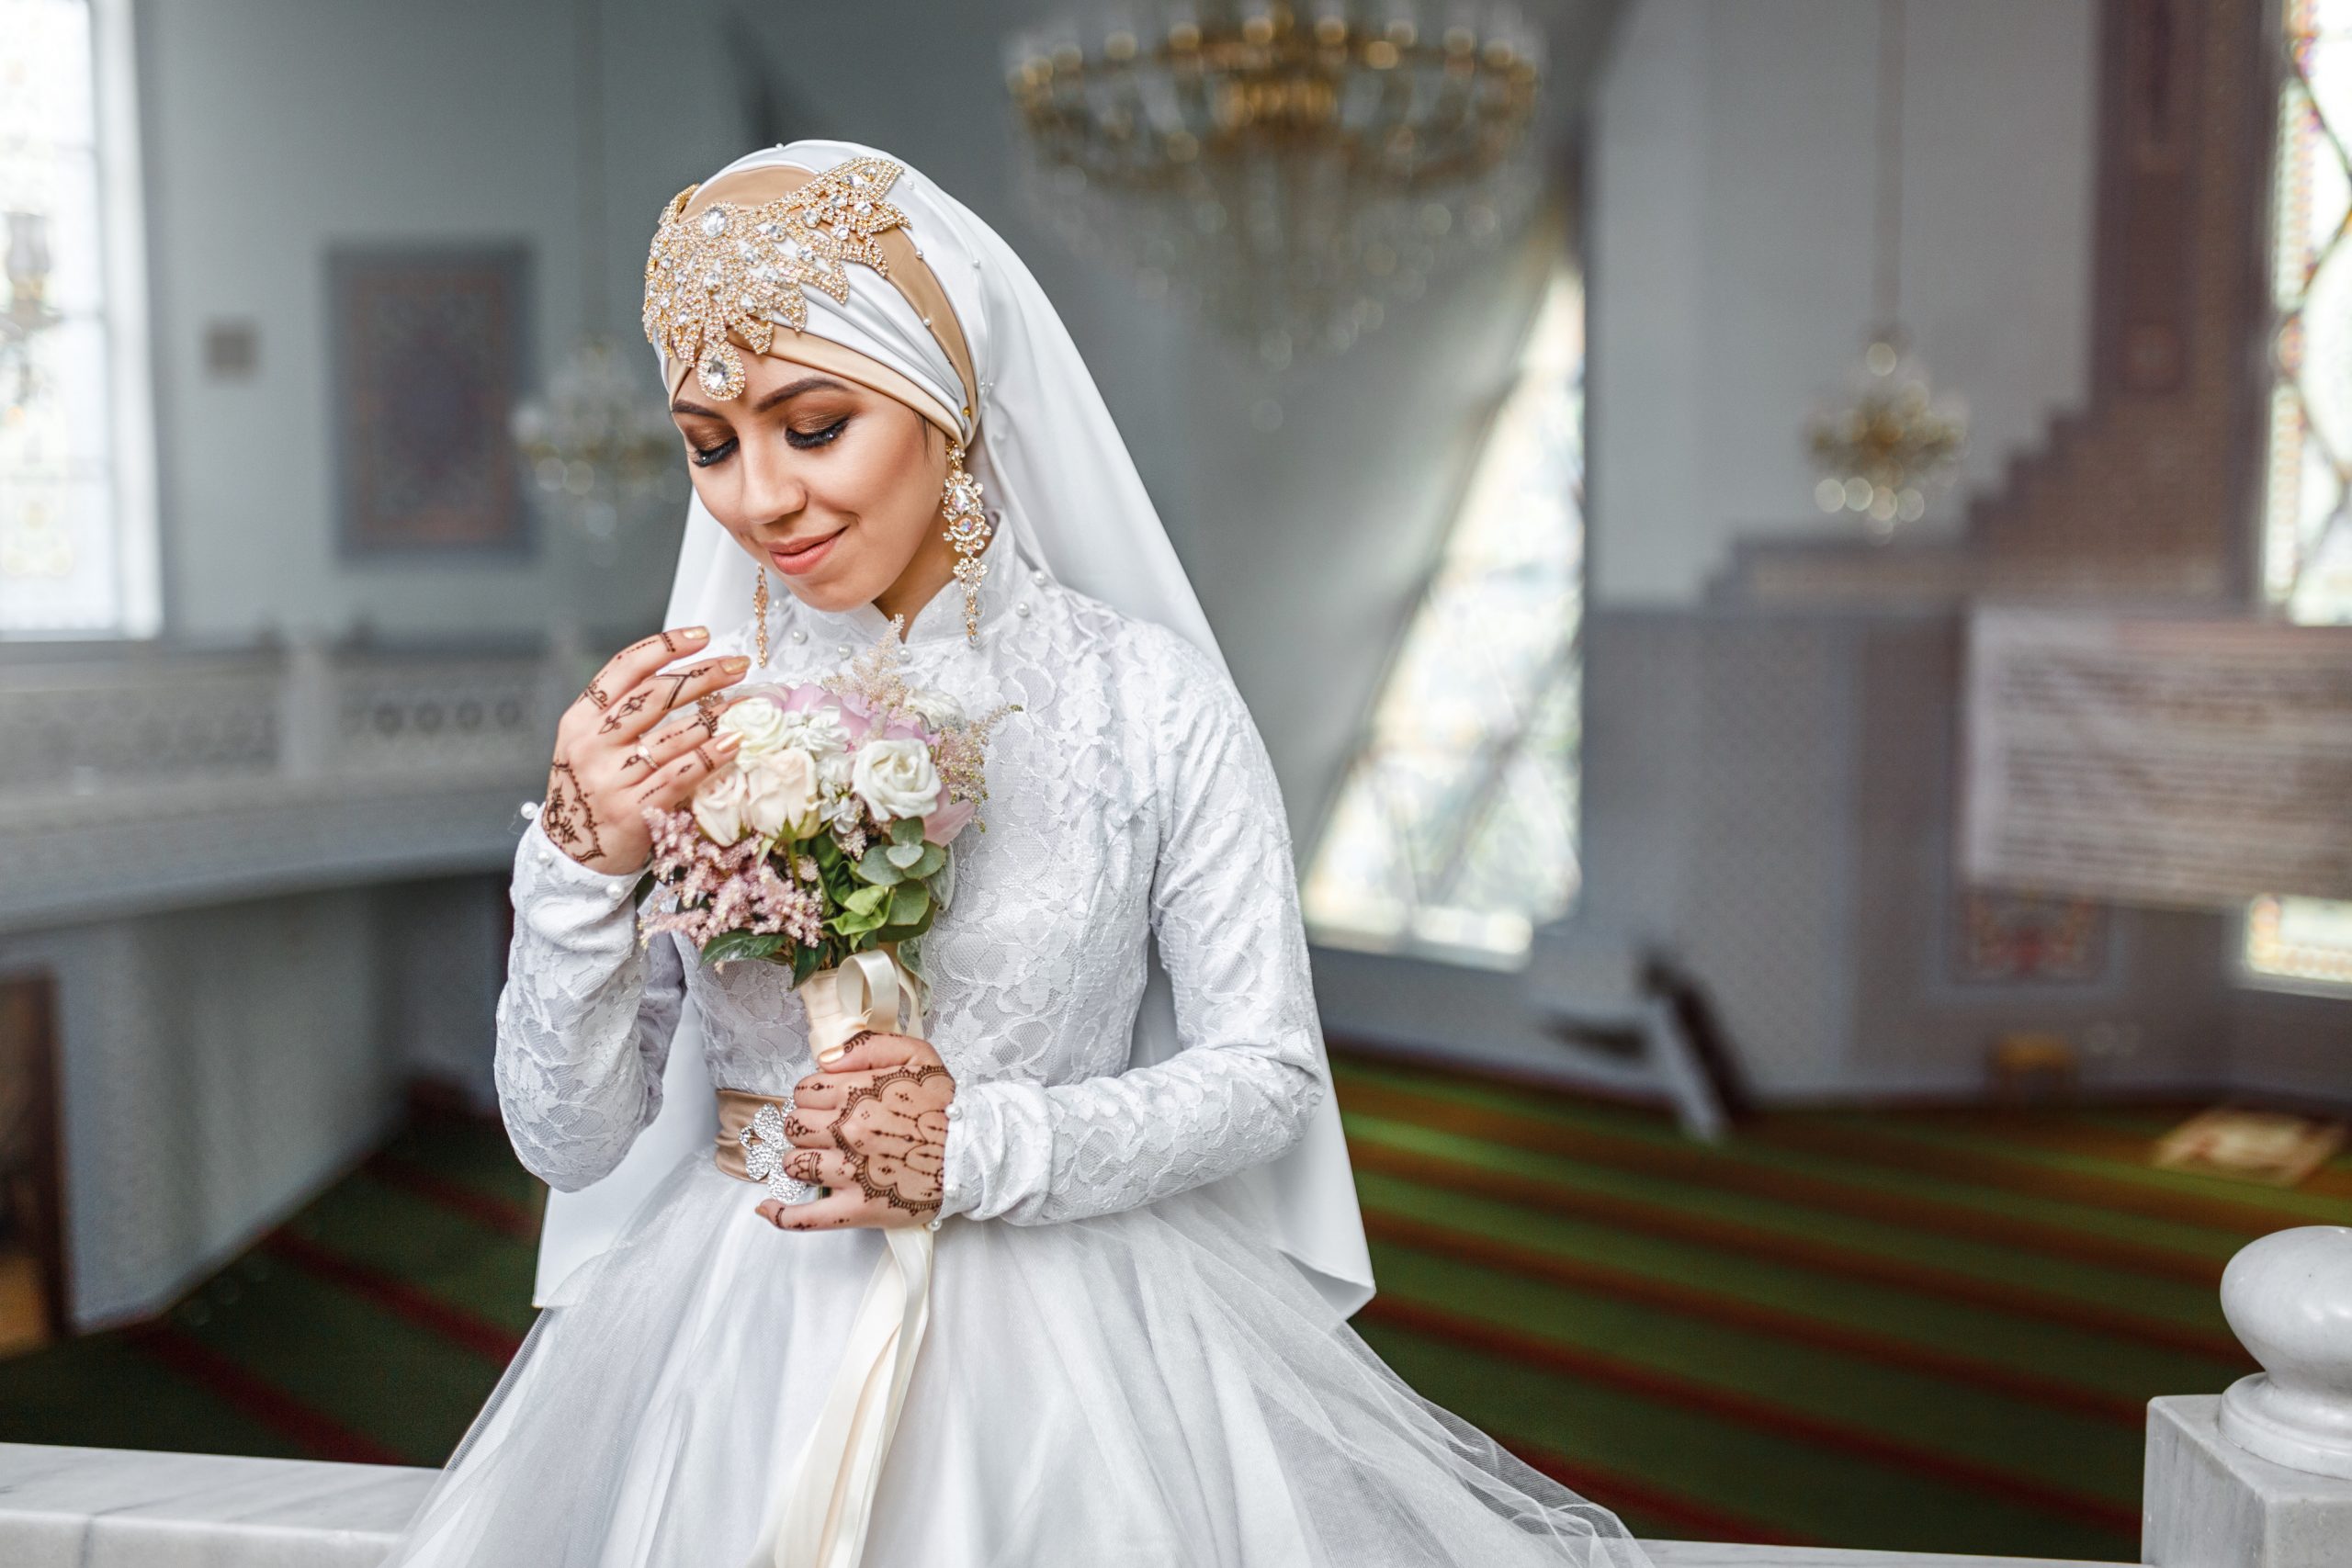 Türkische Hochzeit – Eine Hochzeitszeremonie Voller Bräuche